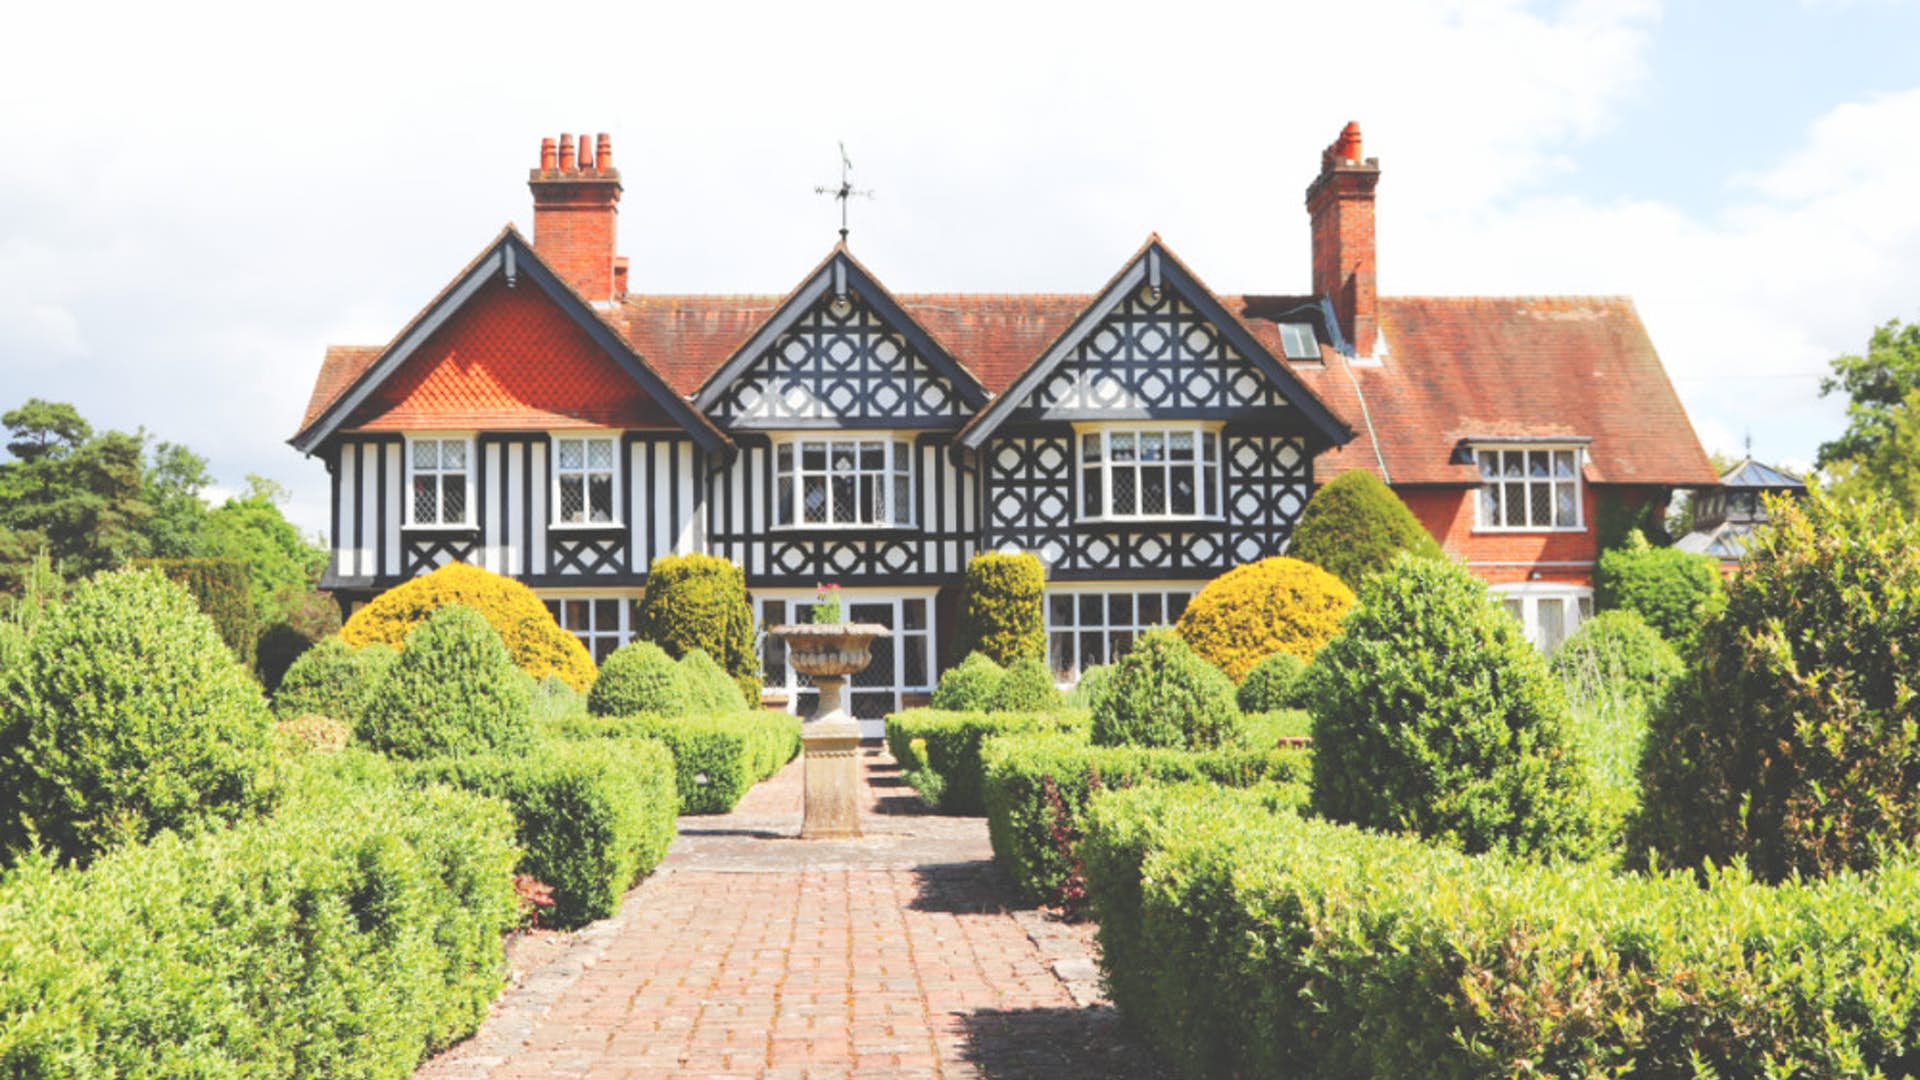 Foxlea Manor – Buckinghamshire